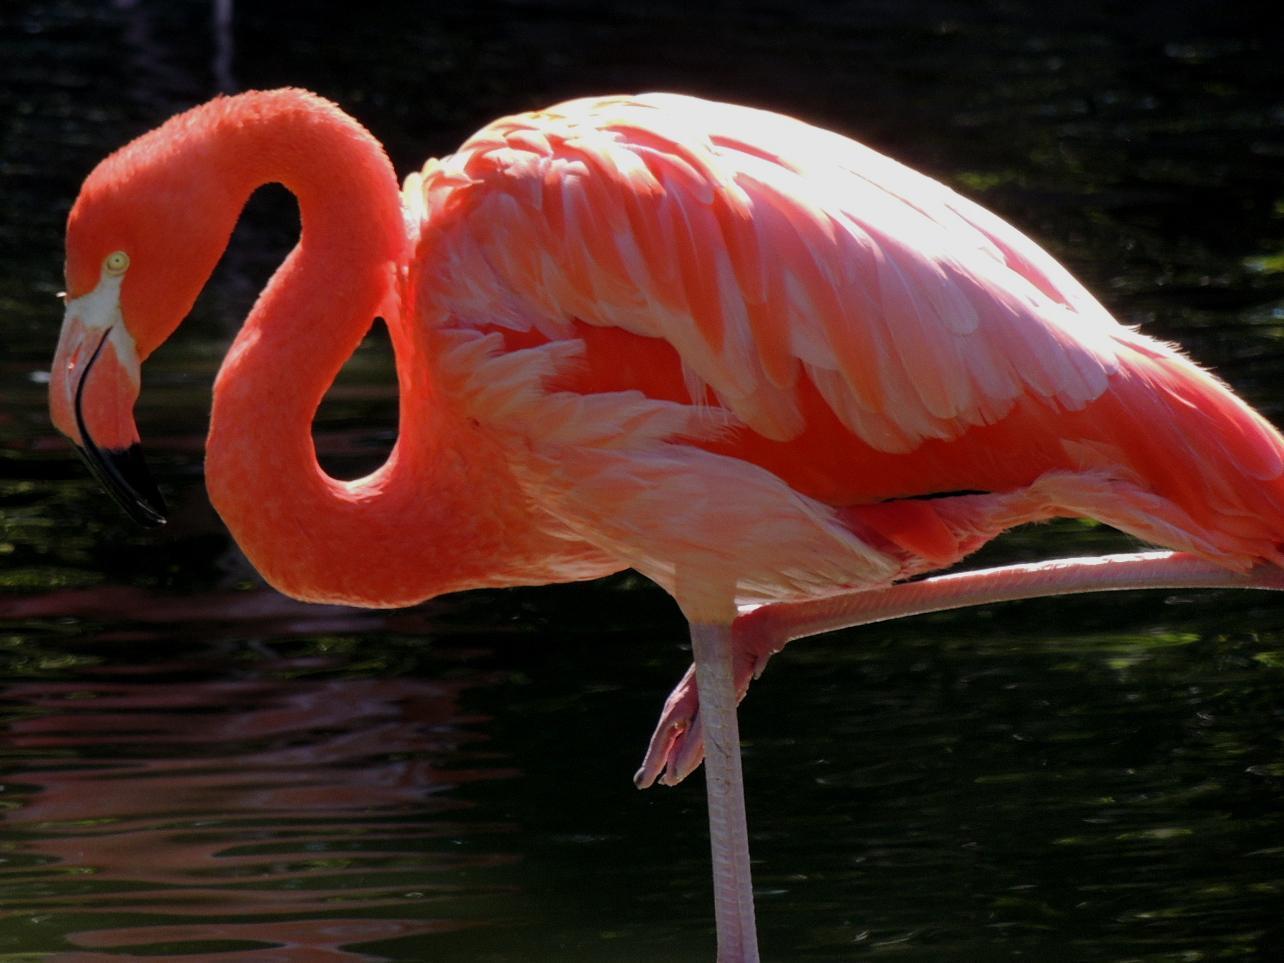 flamingo sp. Photo by Tony Heindel